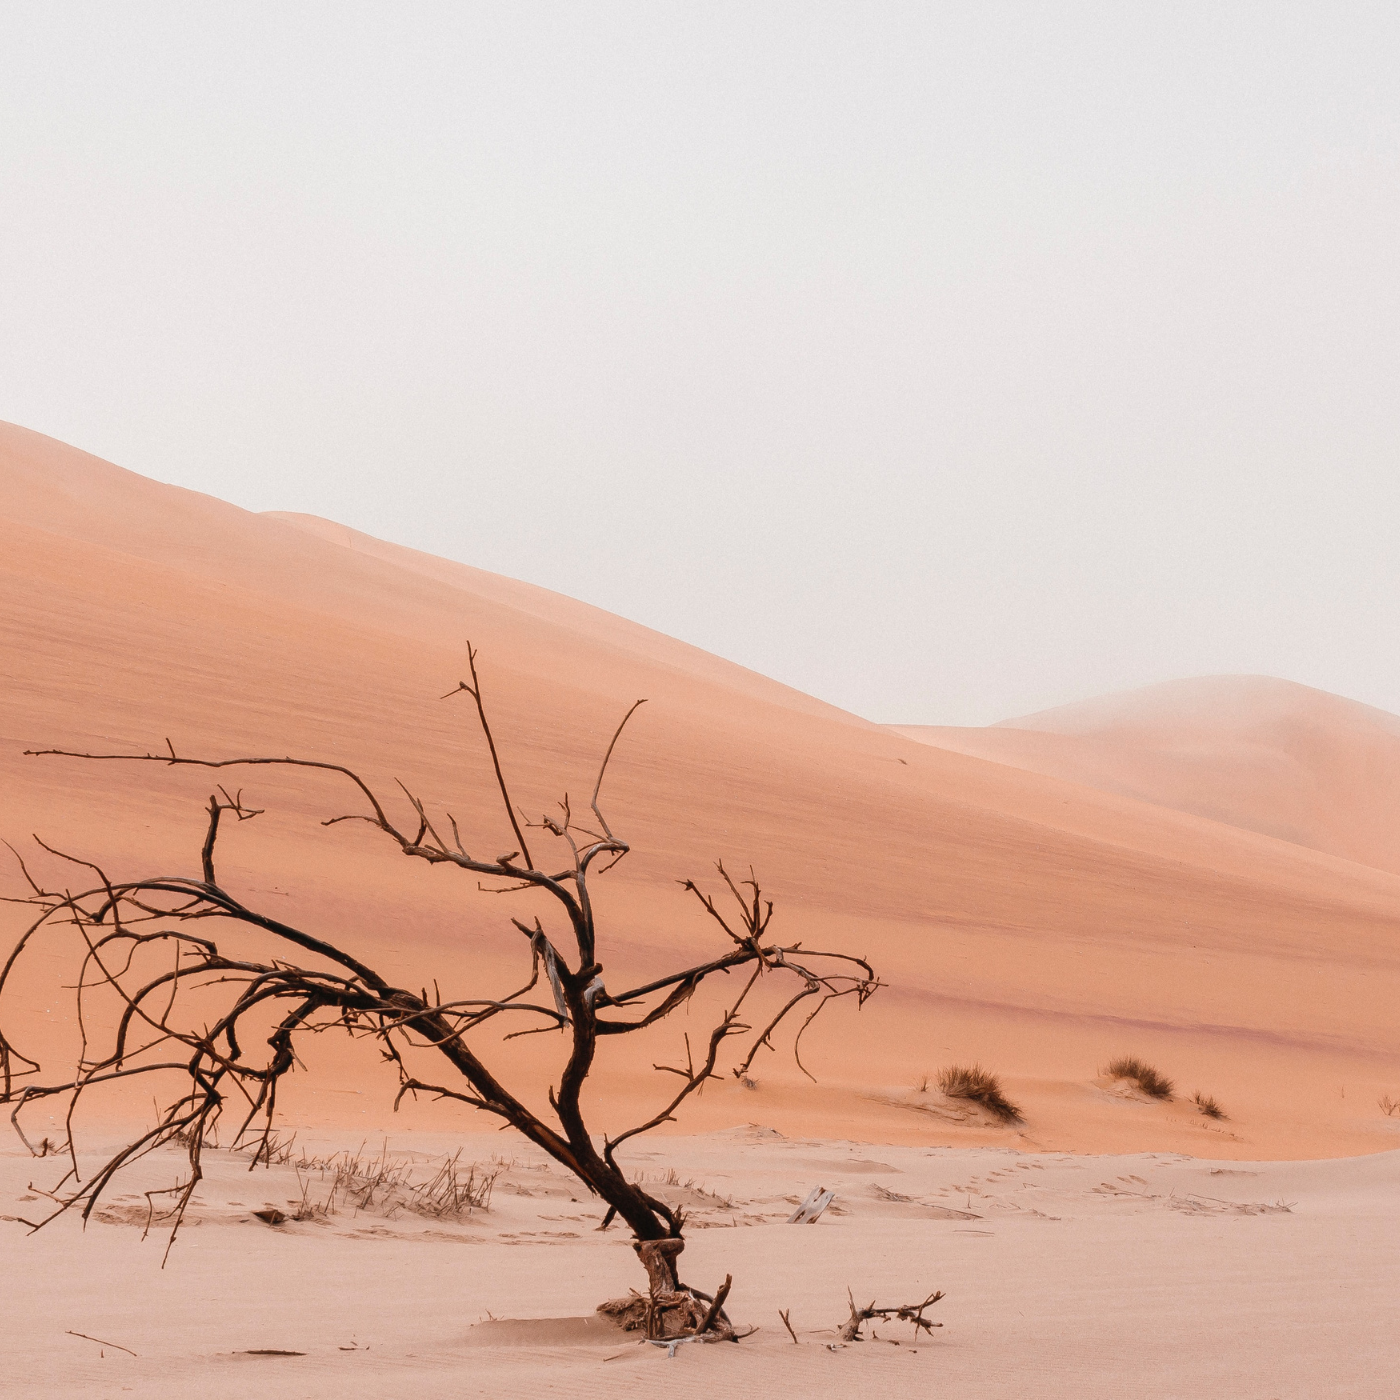 In the desert but not deserted: Part 2